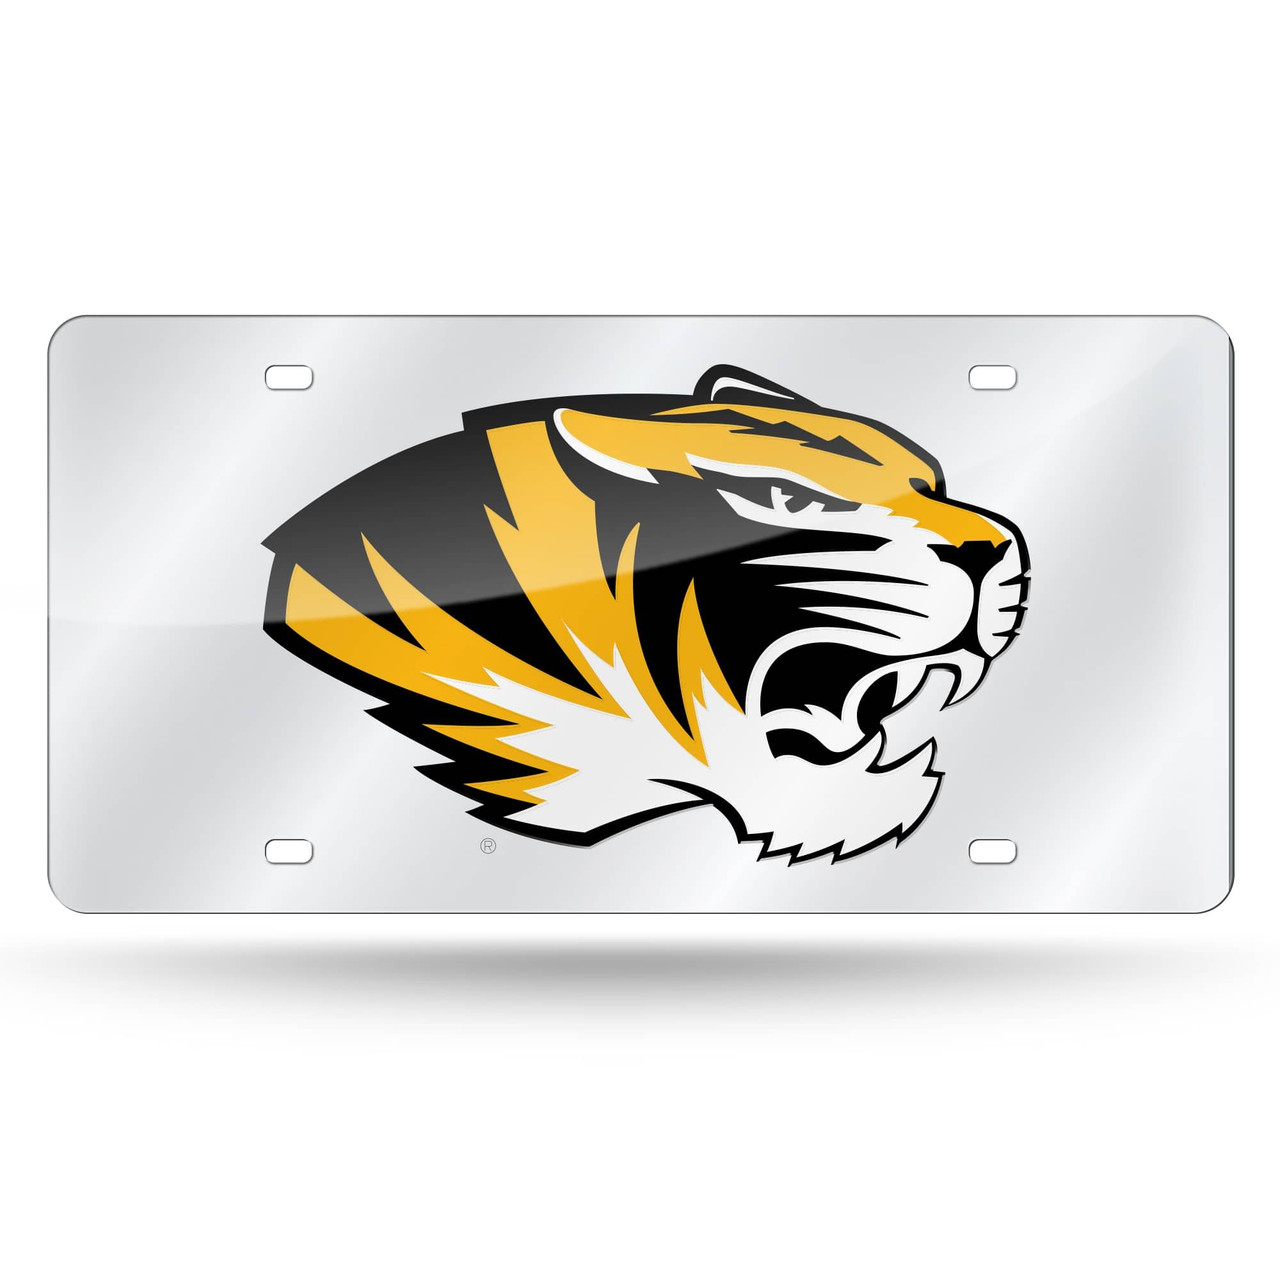 6 x 12 Yellow & Black College Missouri Tigers Tag